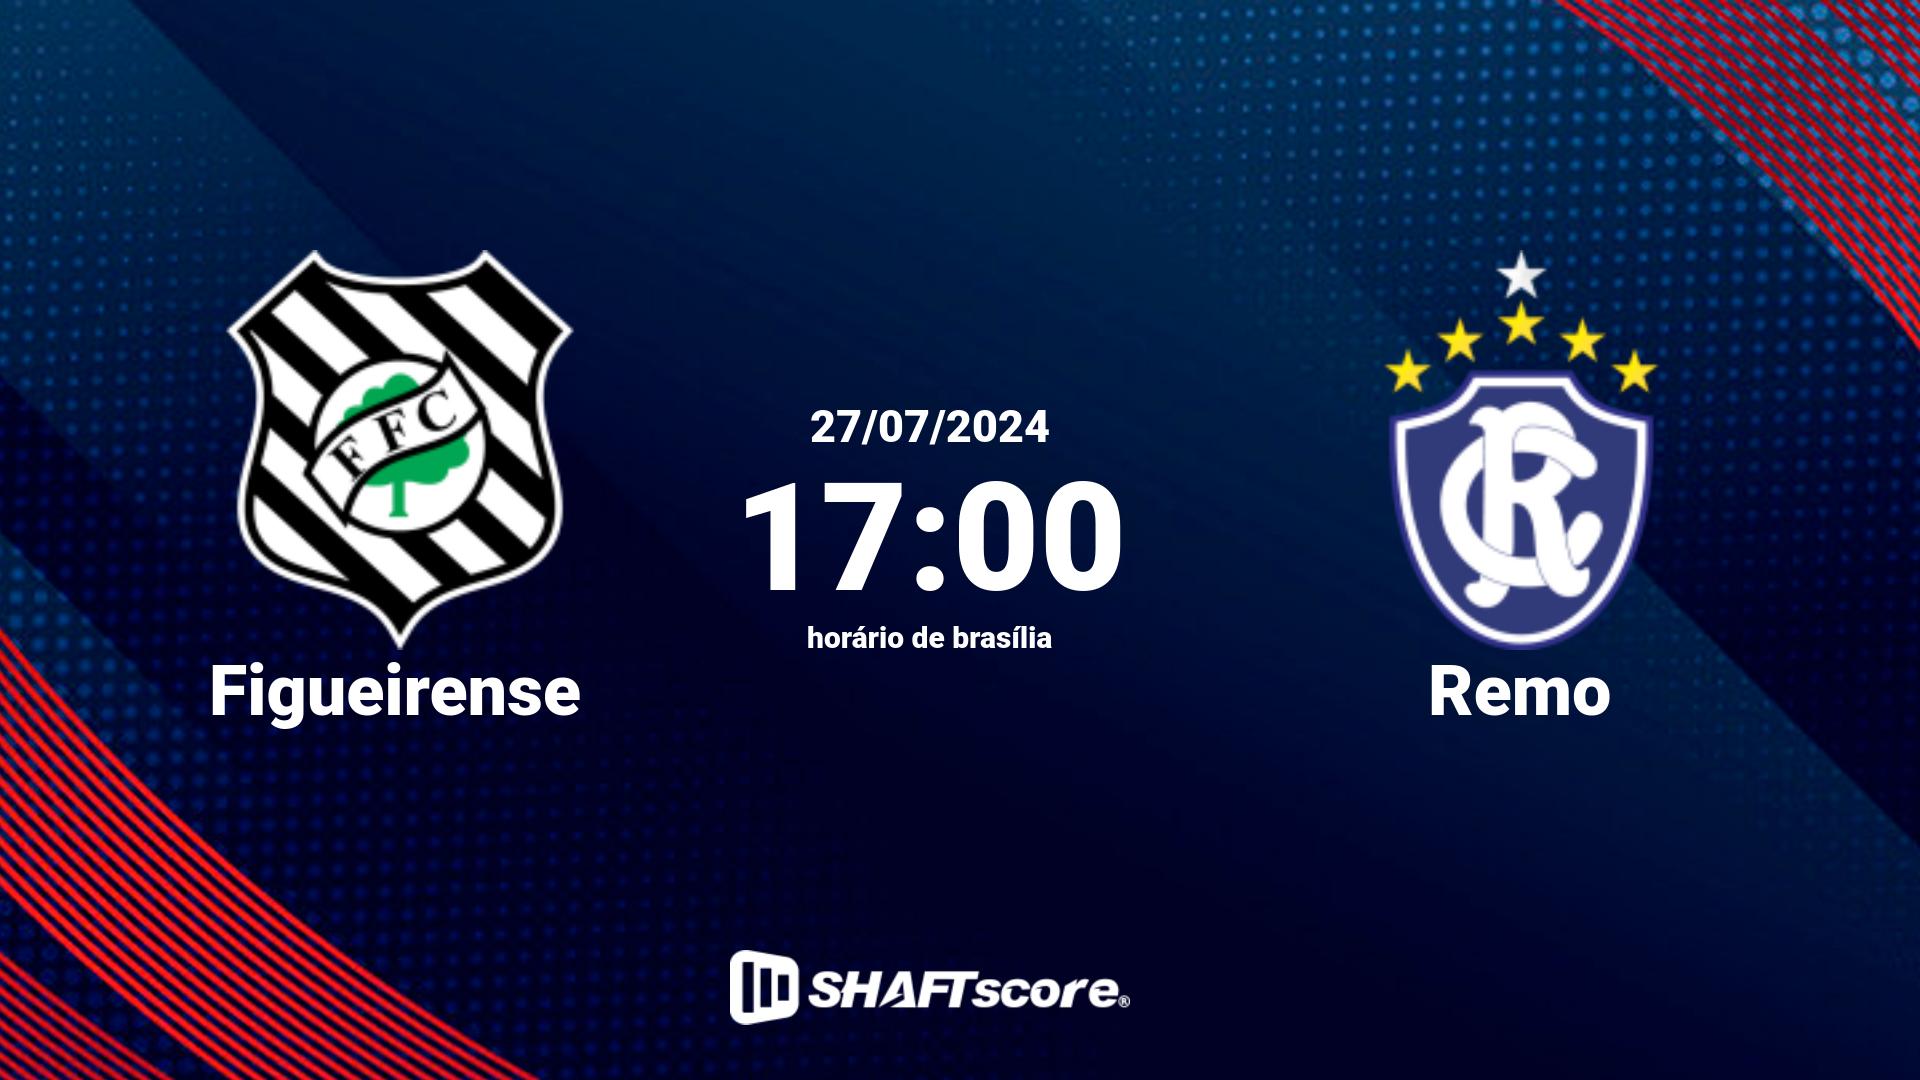 Estatísticas do jogo Figueirense vs Remo 27.07 17:00